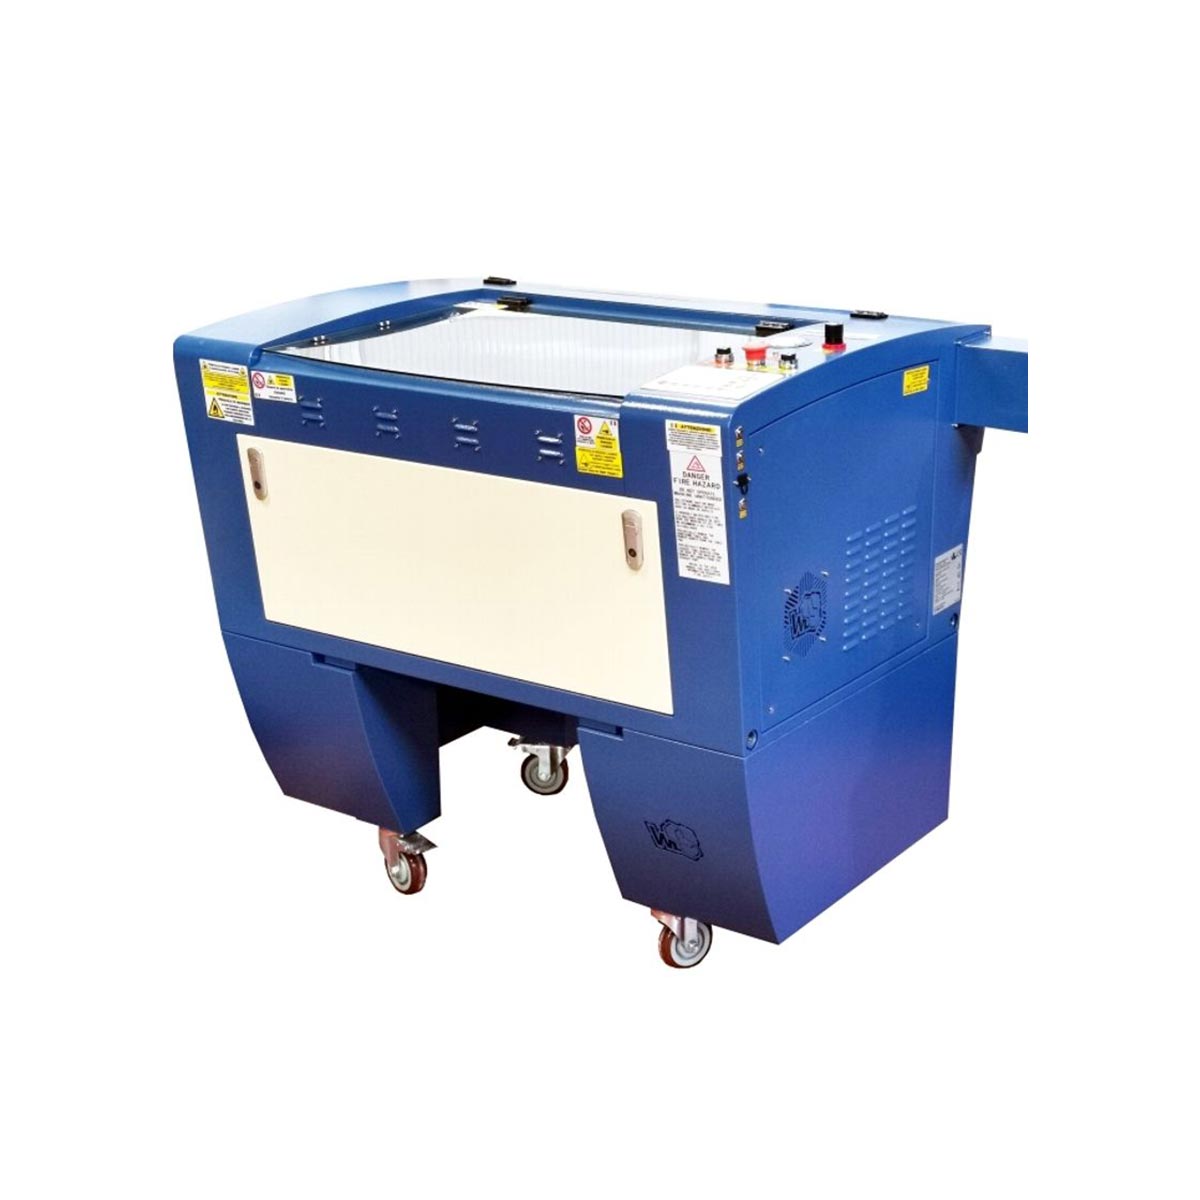 Macchine taglio polistirolo CNC  Pantografi e macchine taglio e incisione  laser - Progettazione produzione e vendita